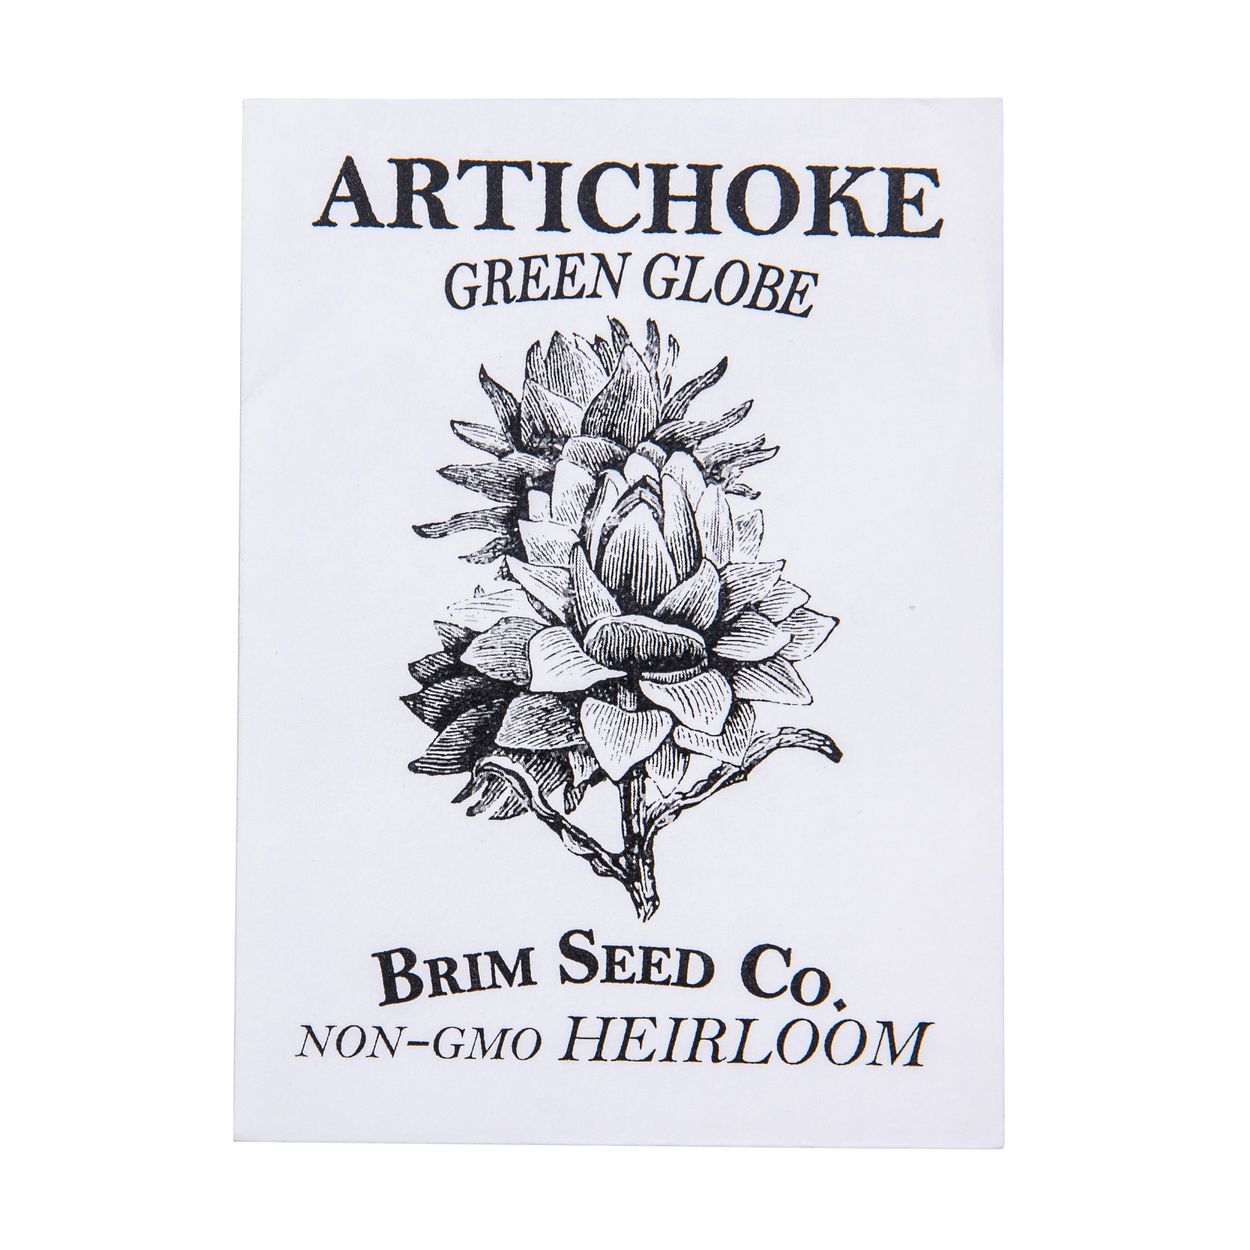 Brim Seed Co. - Artichoke Green Globe Heirloom Seed